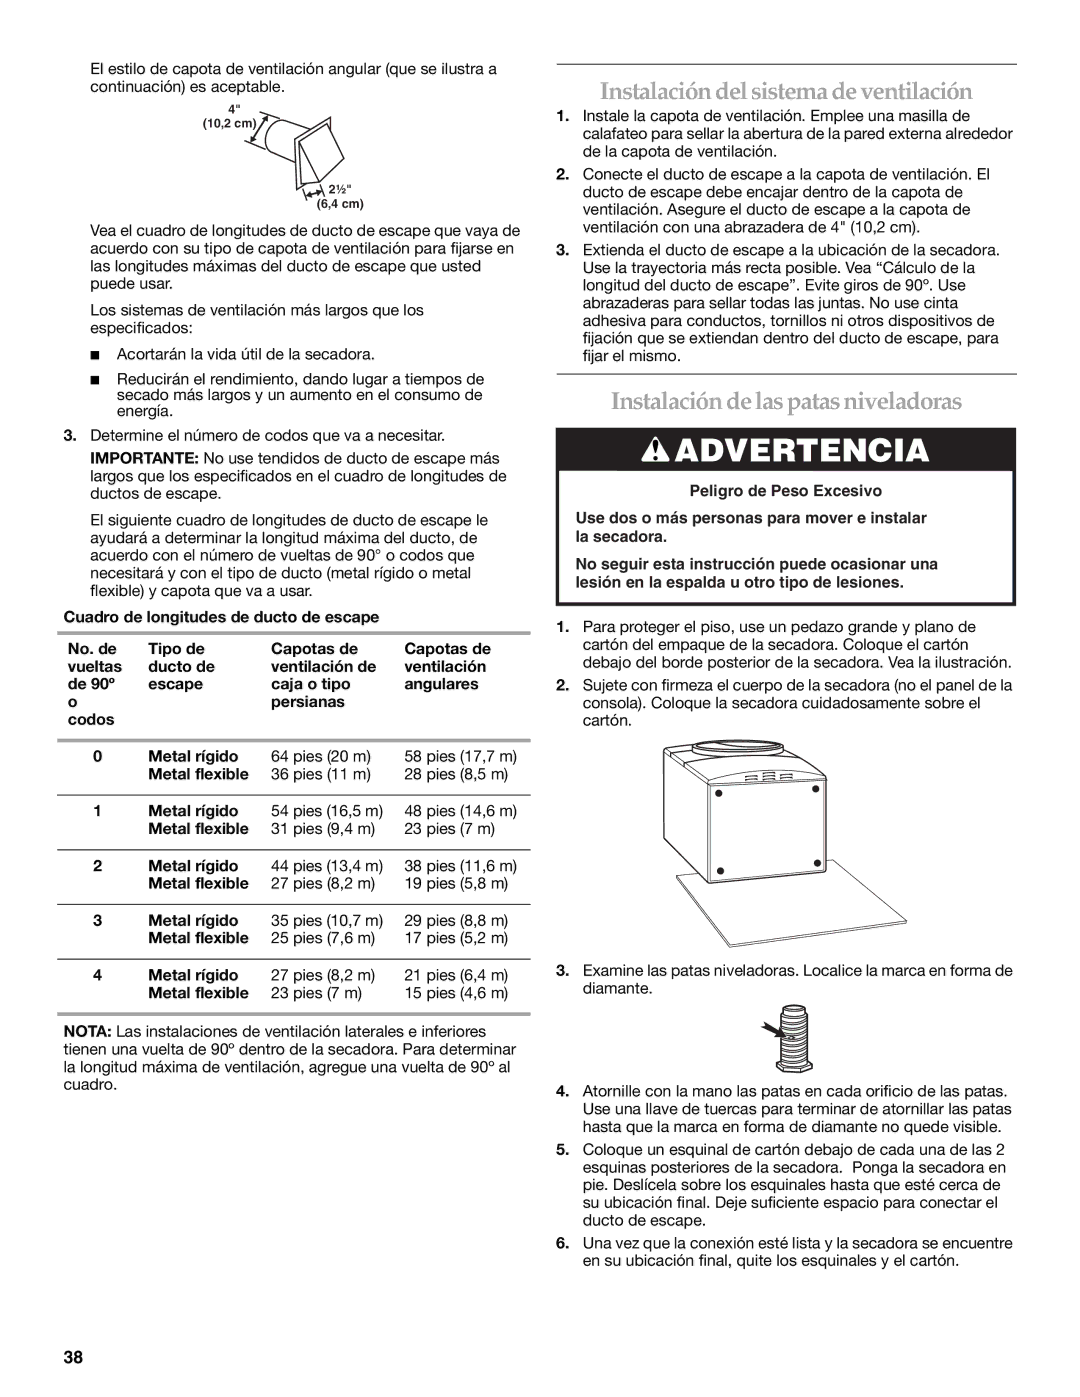 KitchenAid YKEHS01P manual Instalación delsistema de ventilación, Instalación de las patas niveladoras 